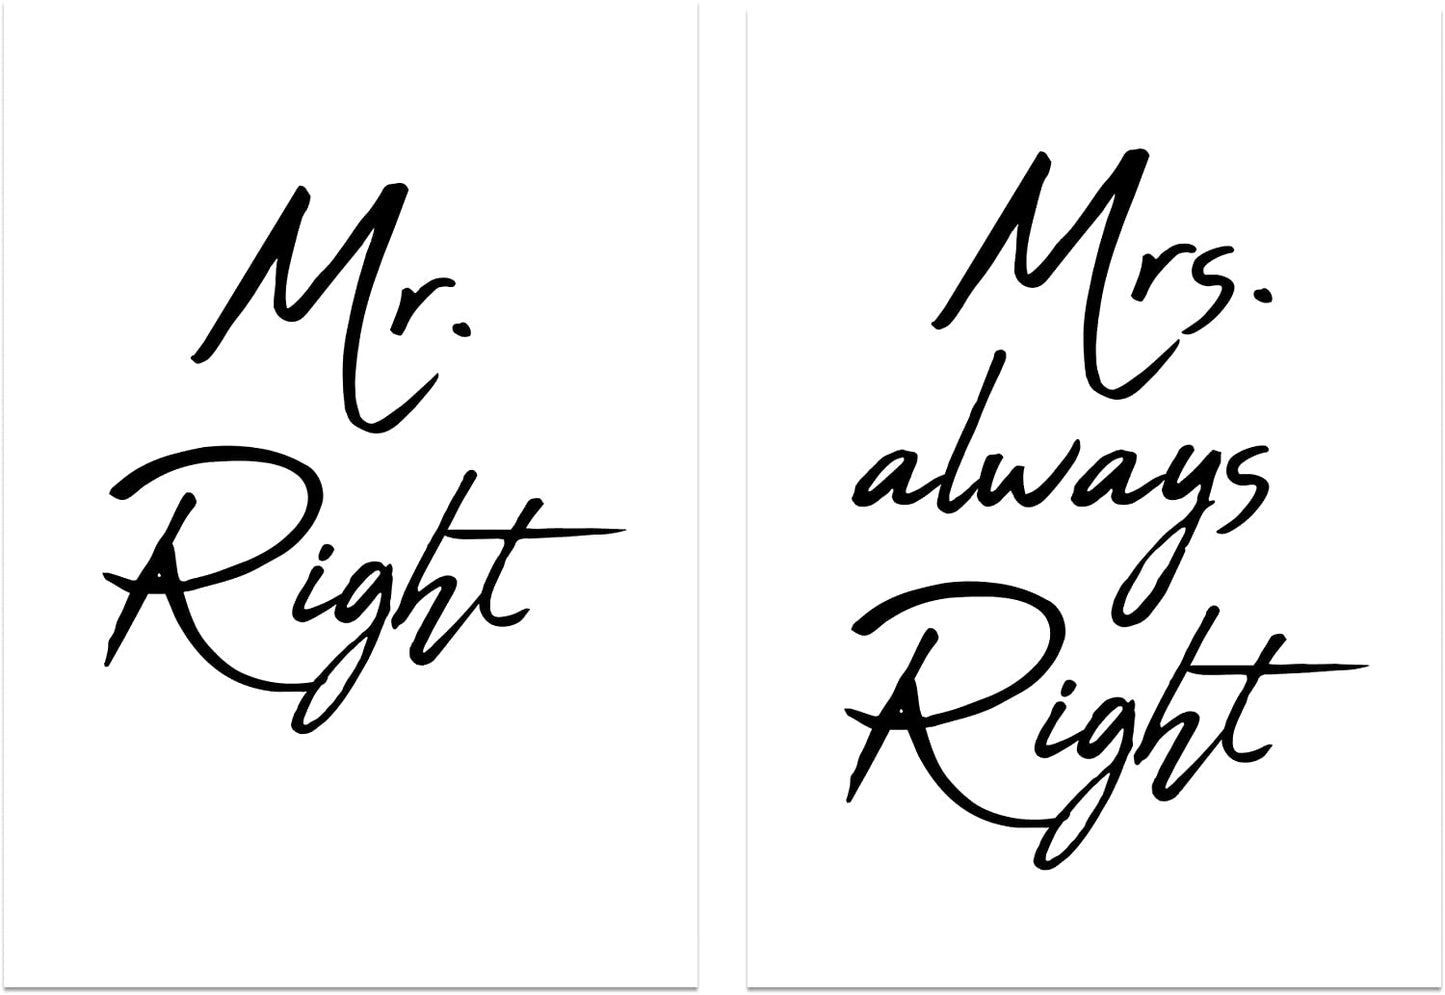 PICSonPAPER Poster 2er-Set Mr. Right & Mrs. Always Right, ungerahmt DIN A4, Geschenk zur Hochzeit (Mr. Right & Mrs. Always Right, DIN A4 ungerahmt)